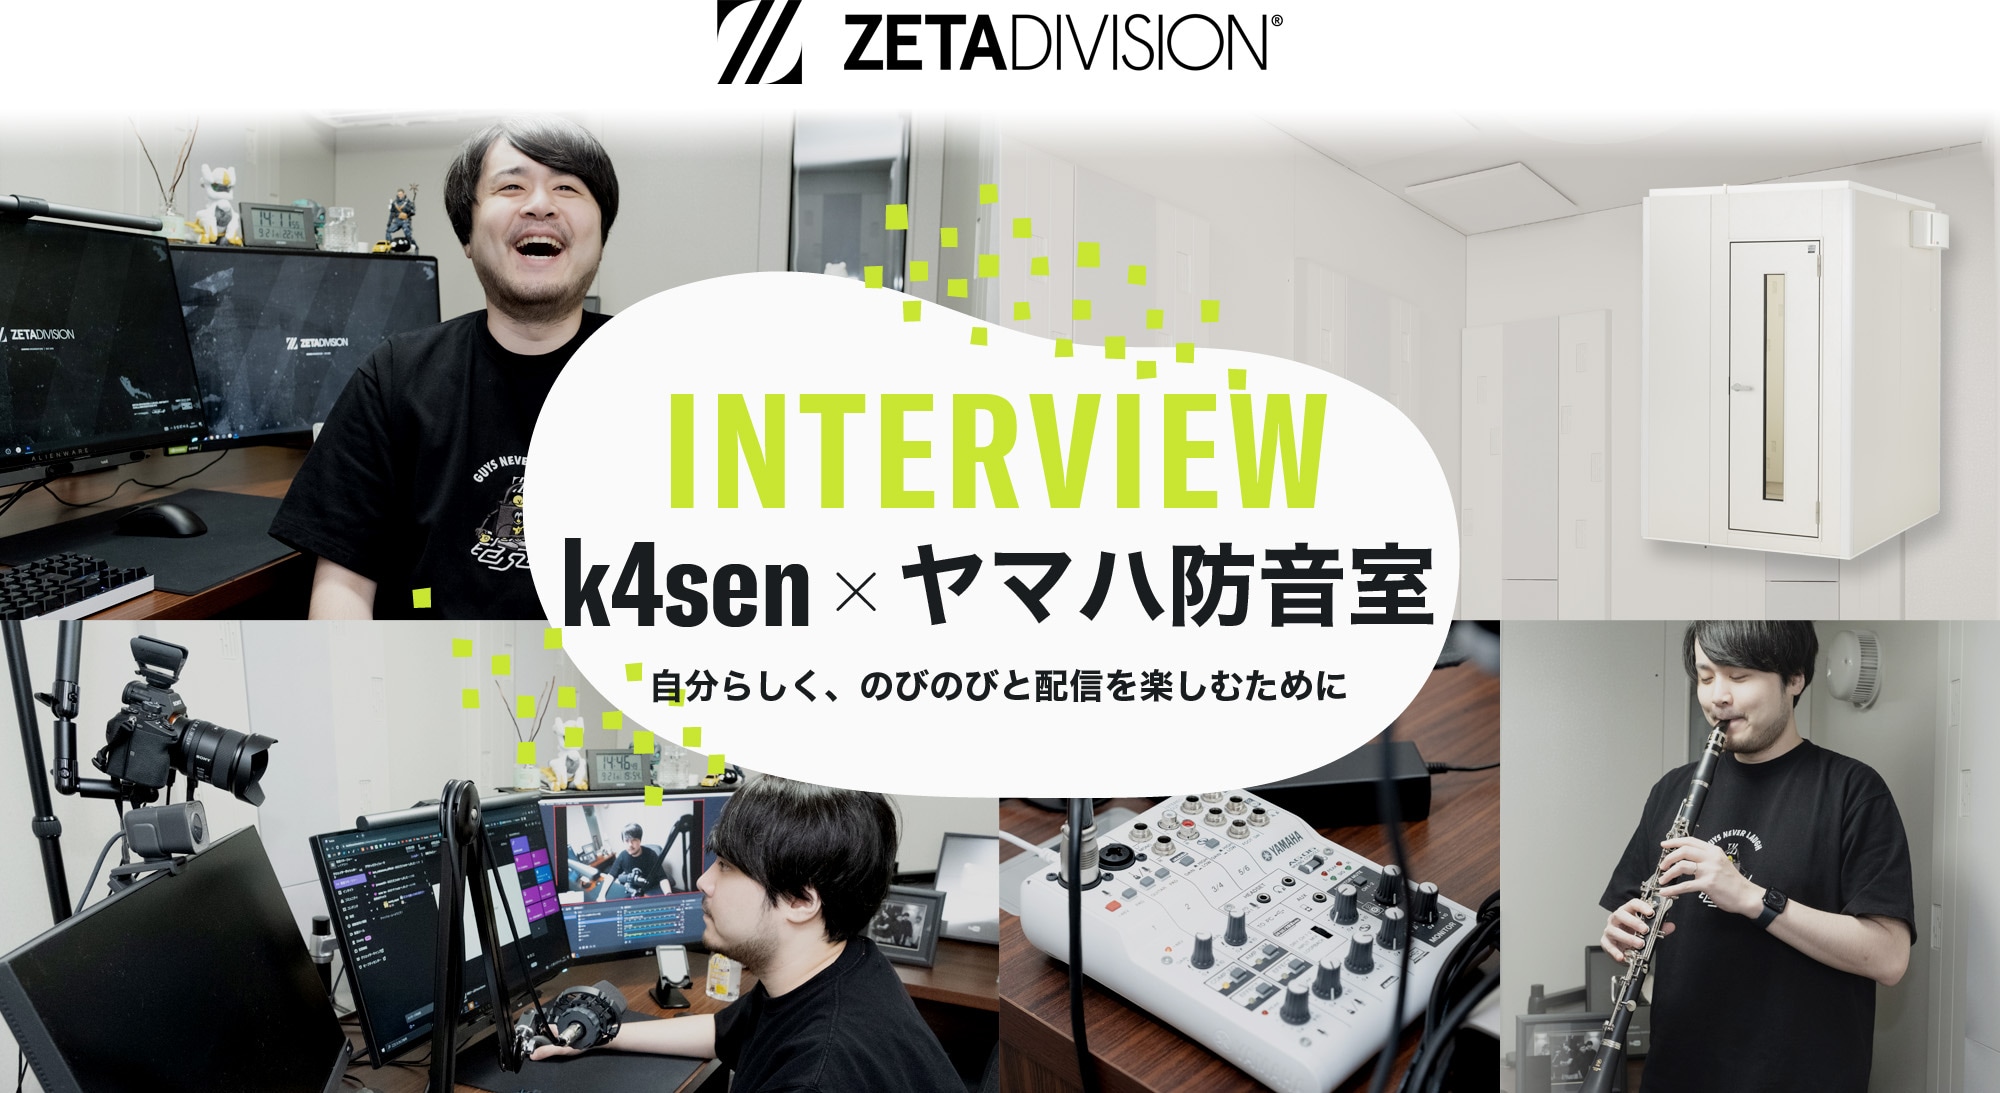 INTERVIEW - k4sen × ヤマハ防音室 - 自分らしく、のびのびと配信を楽しむために - ZETA DIVISION